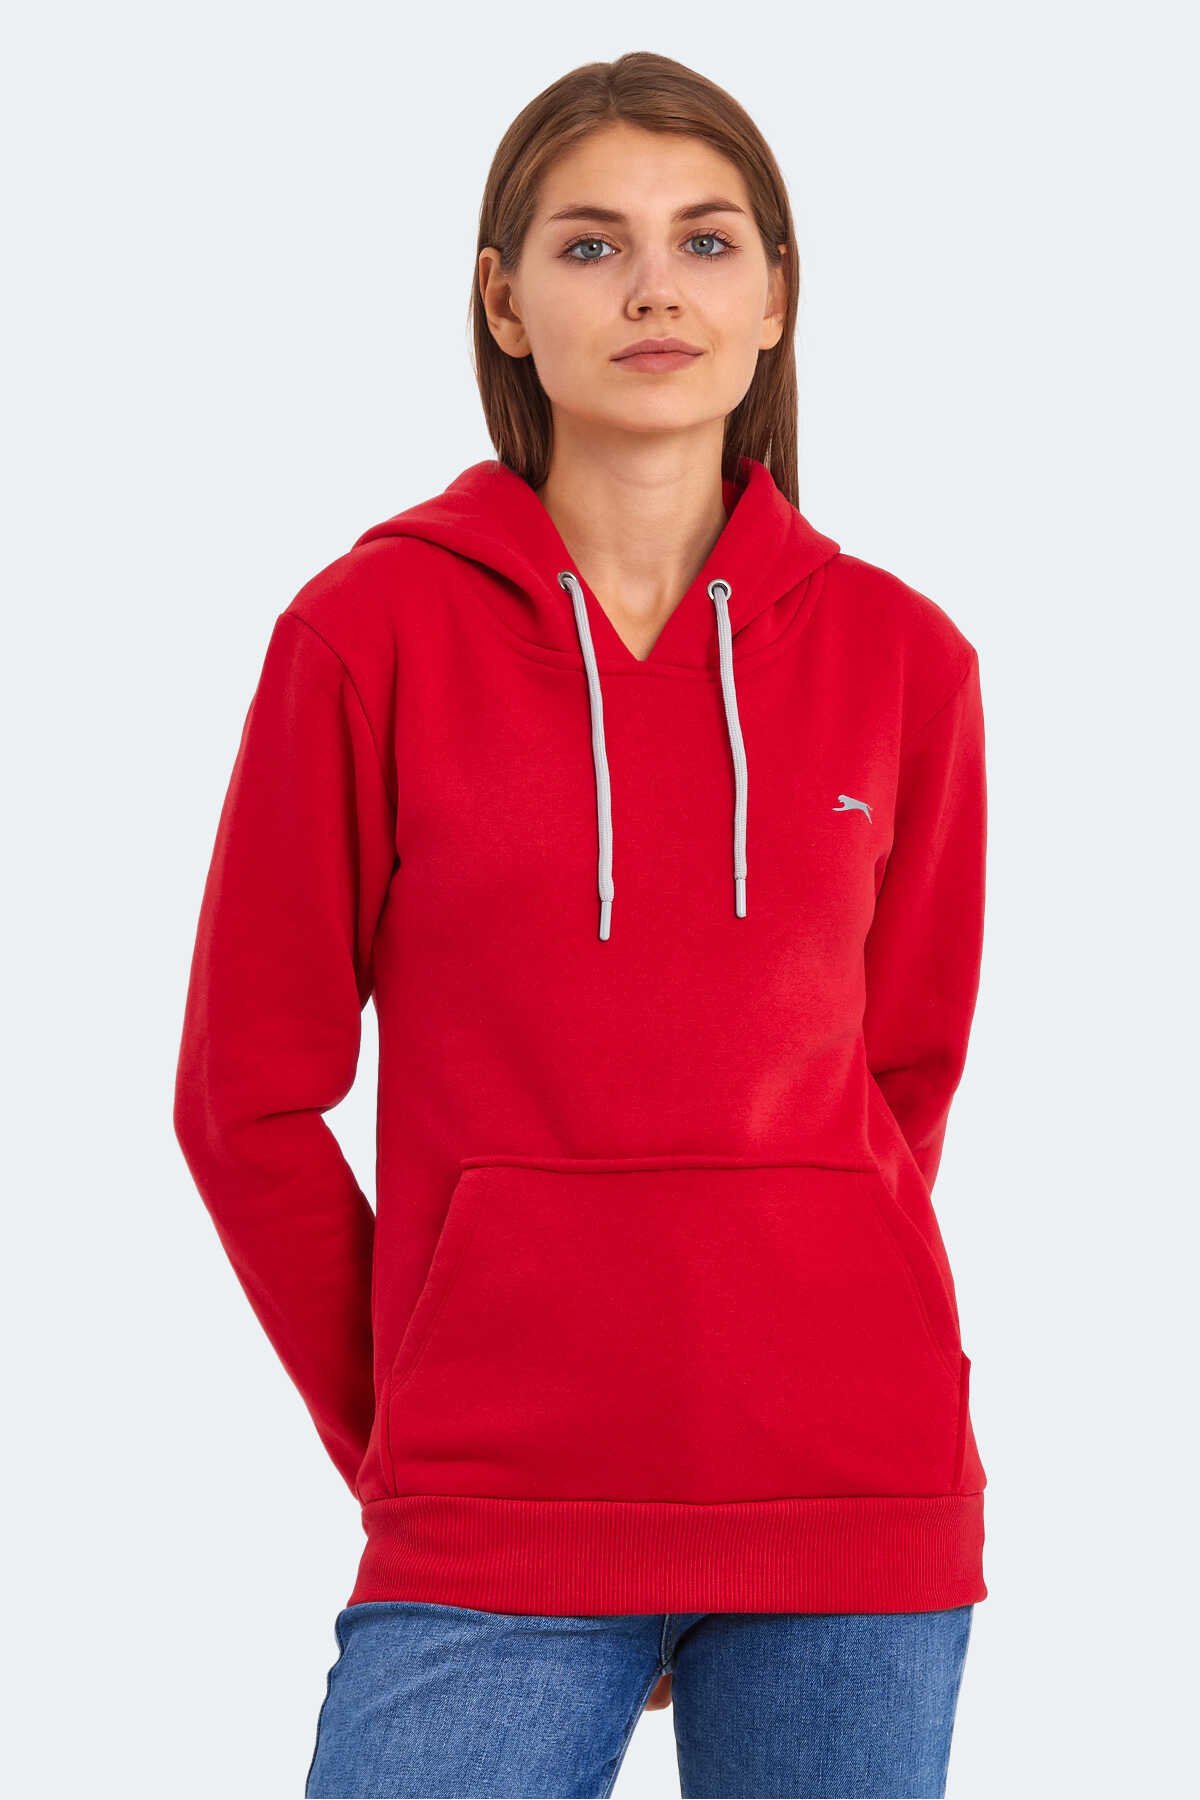 Slazenger - Slazenger KESHIAN IN Kadın Sweatshirt Kırmızı